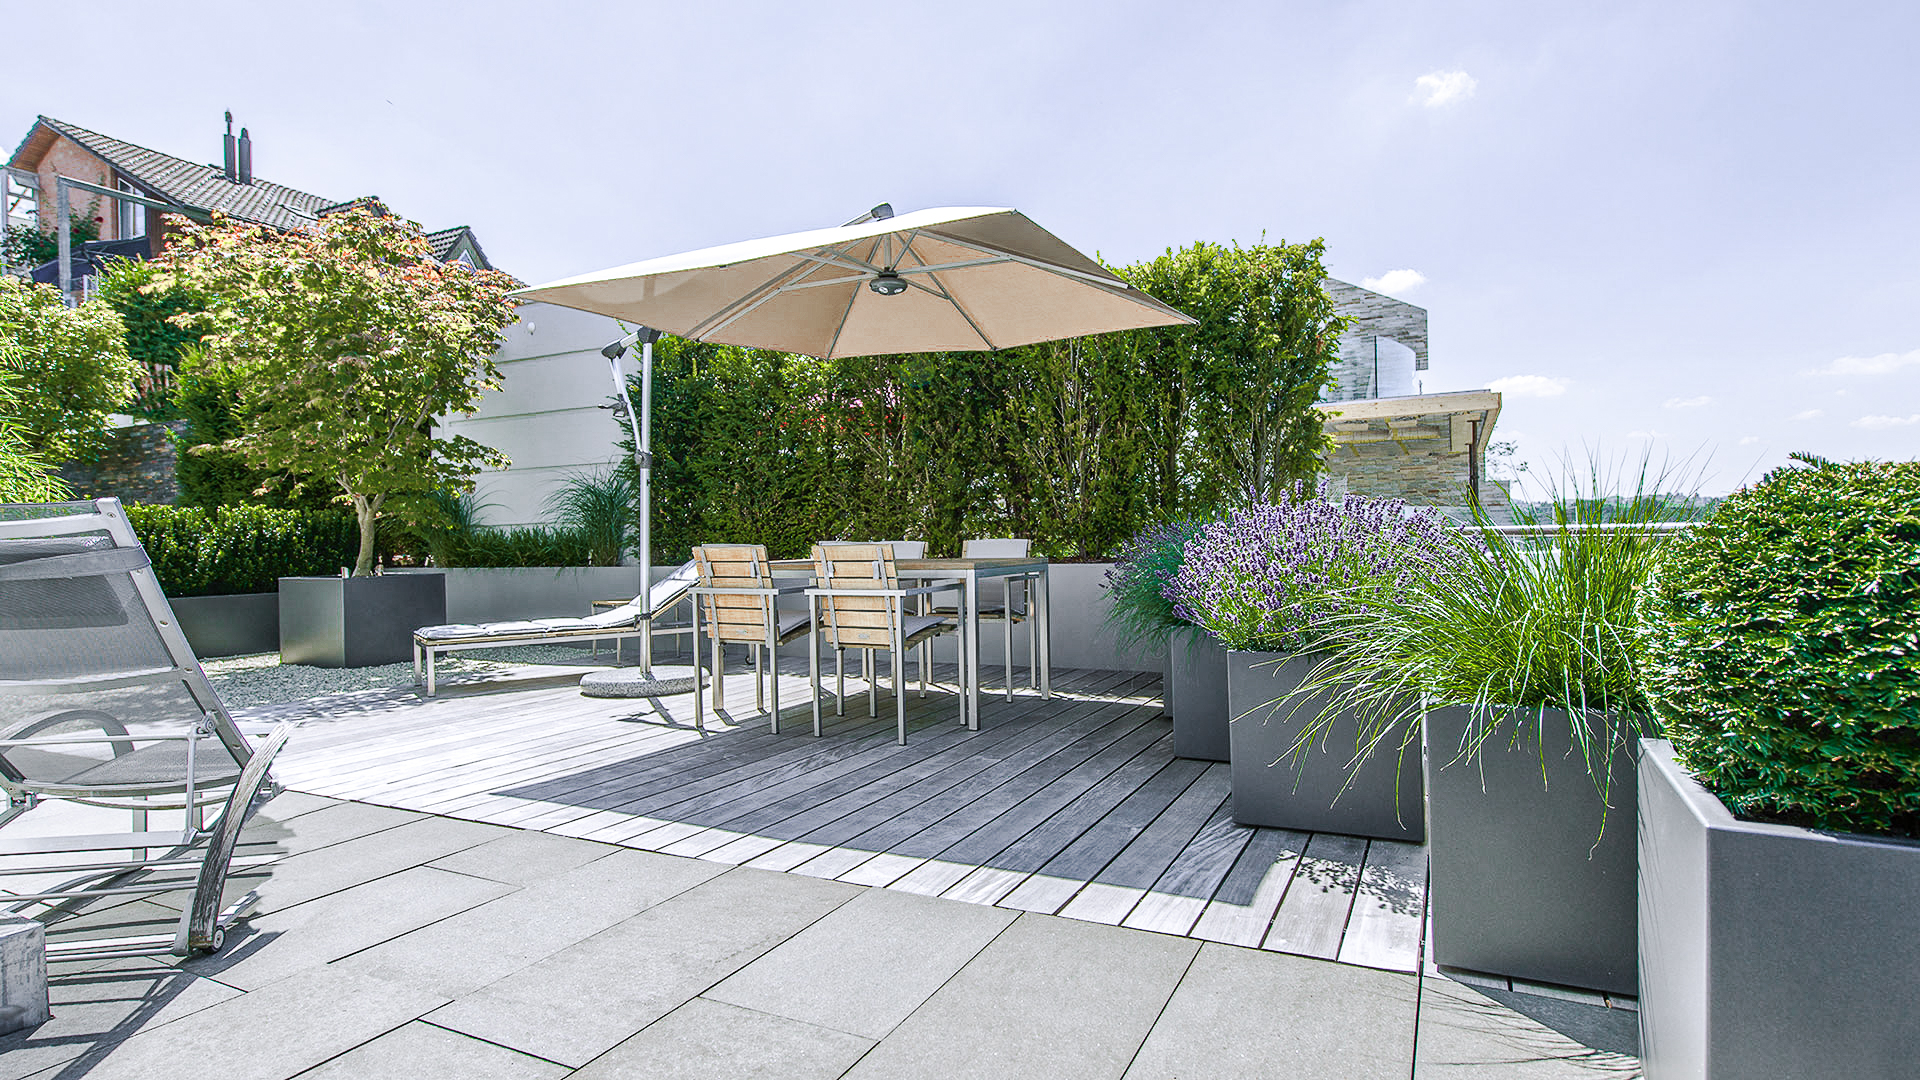 Markisen als Sonnenschutz für Garten, Balkon & Terrasse